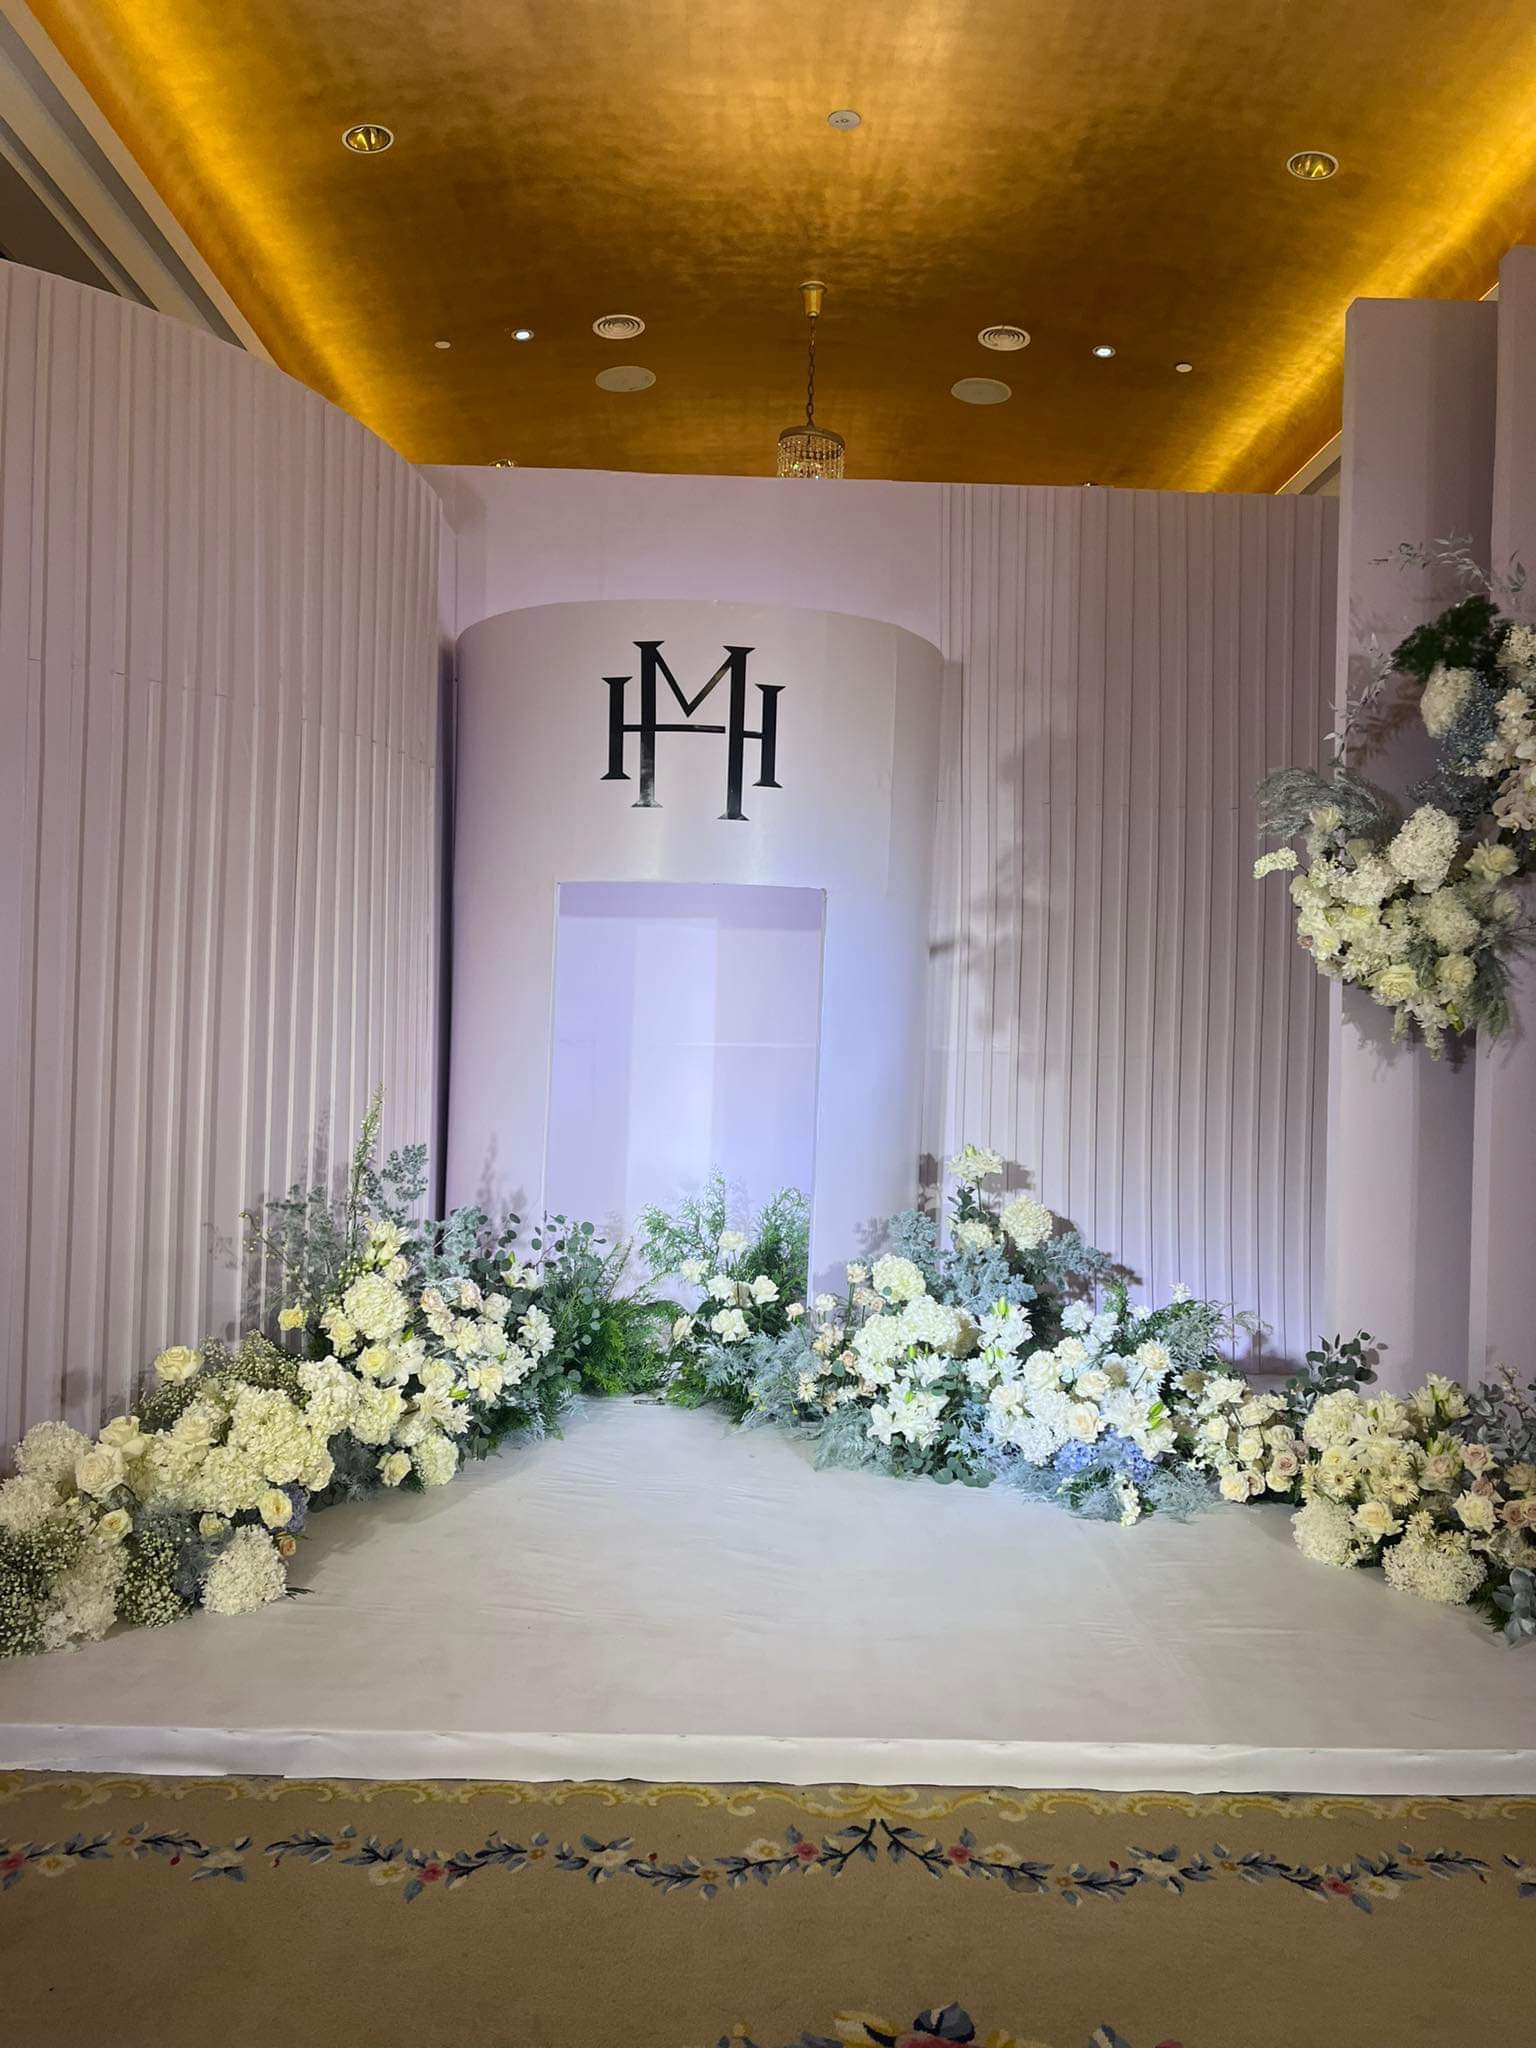 Cập nhật từ đám cưới Thanh Hằng: Không gian phủ hoa tươi, những khách mời đầu tiên đã xuất hiện-3